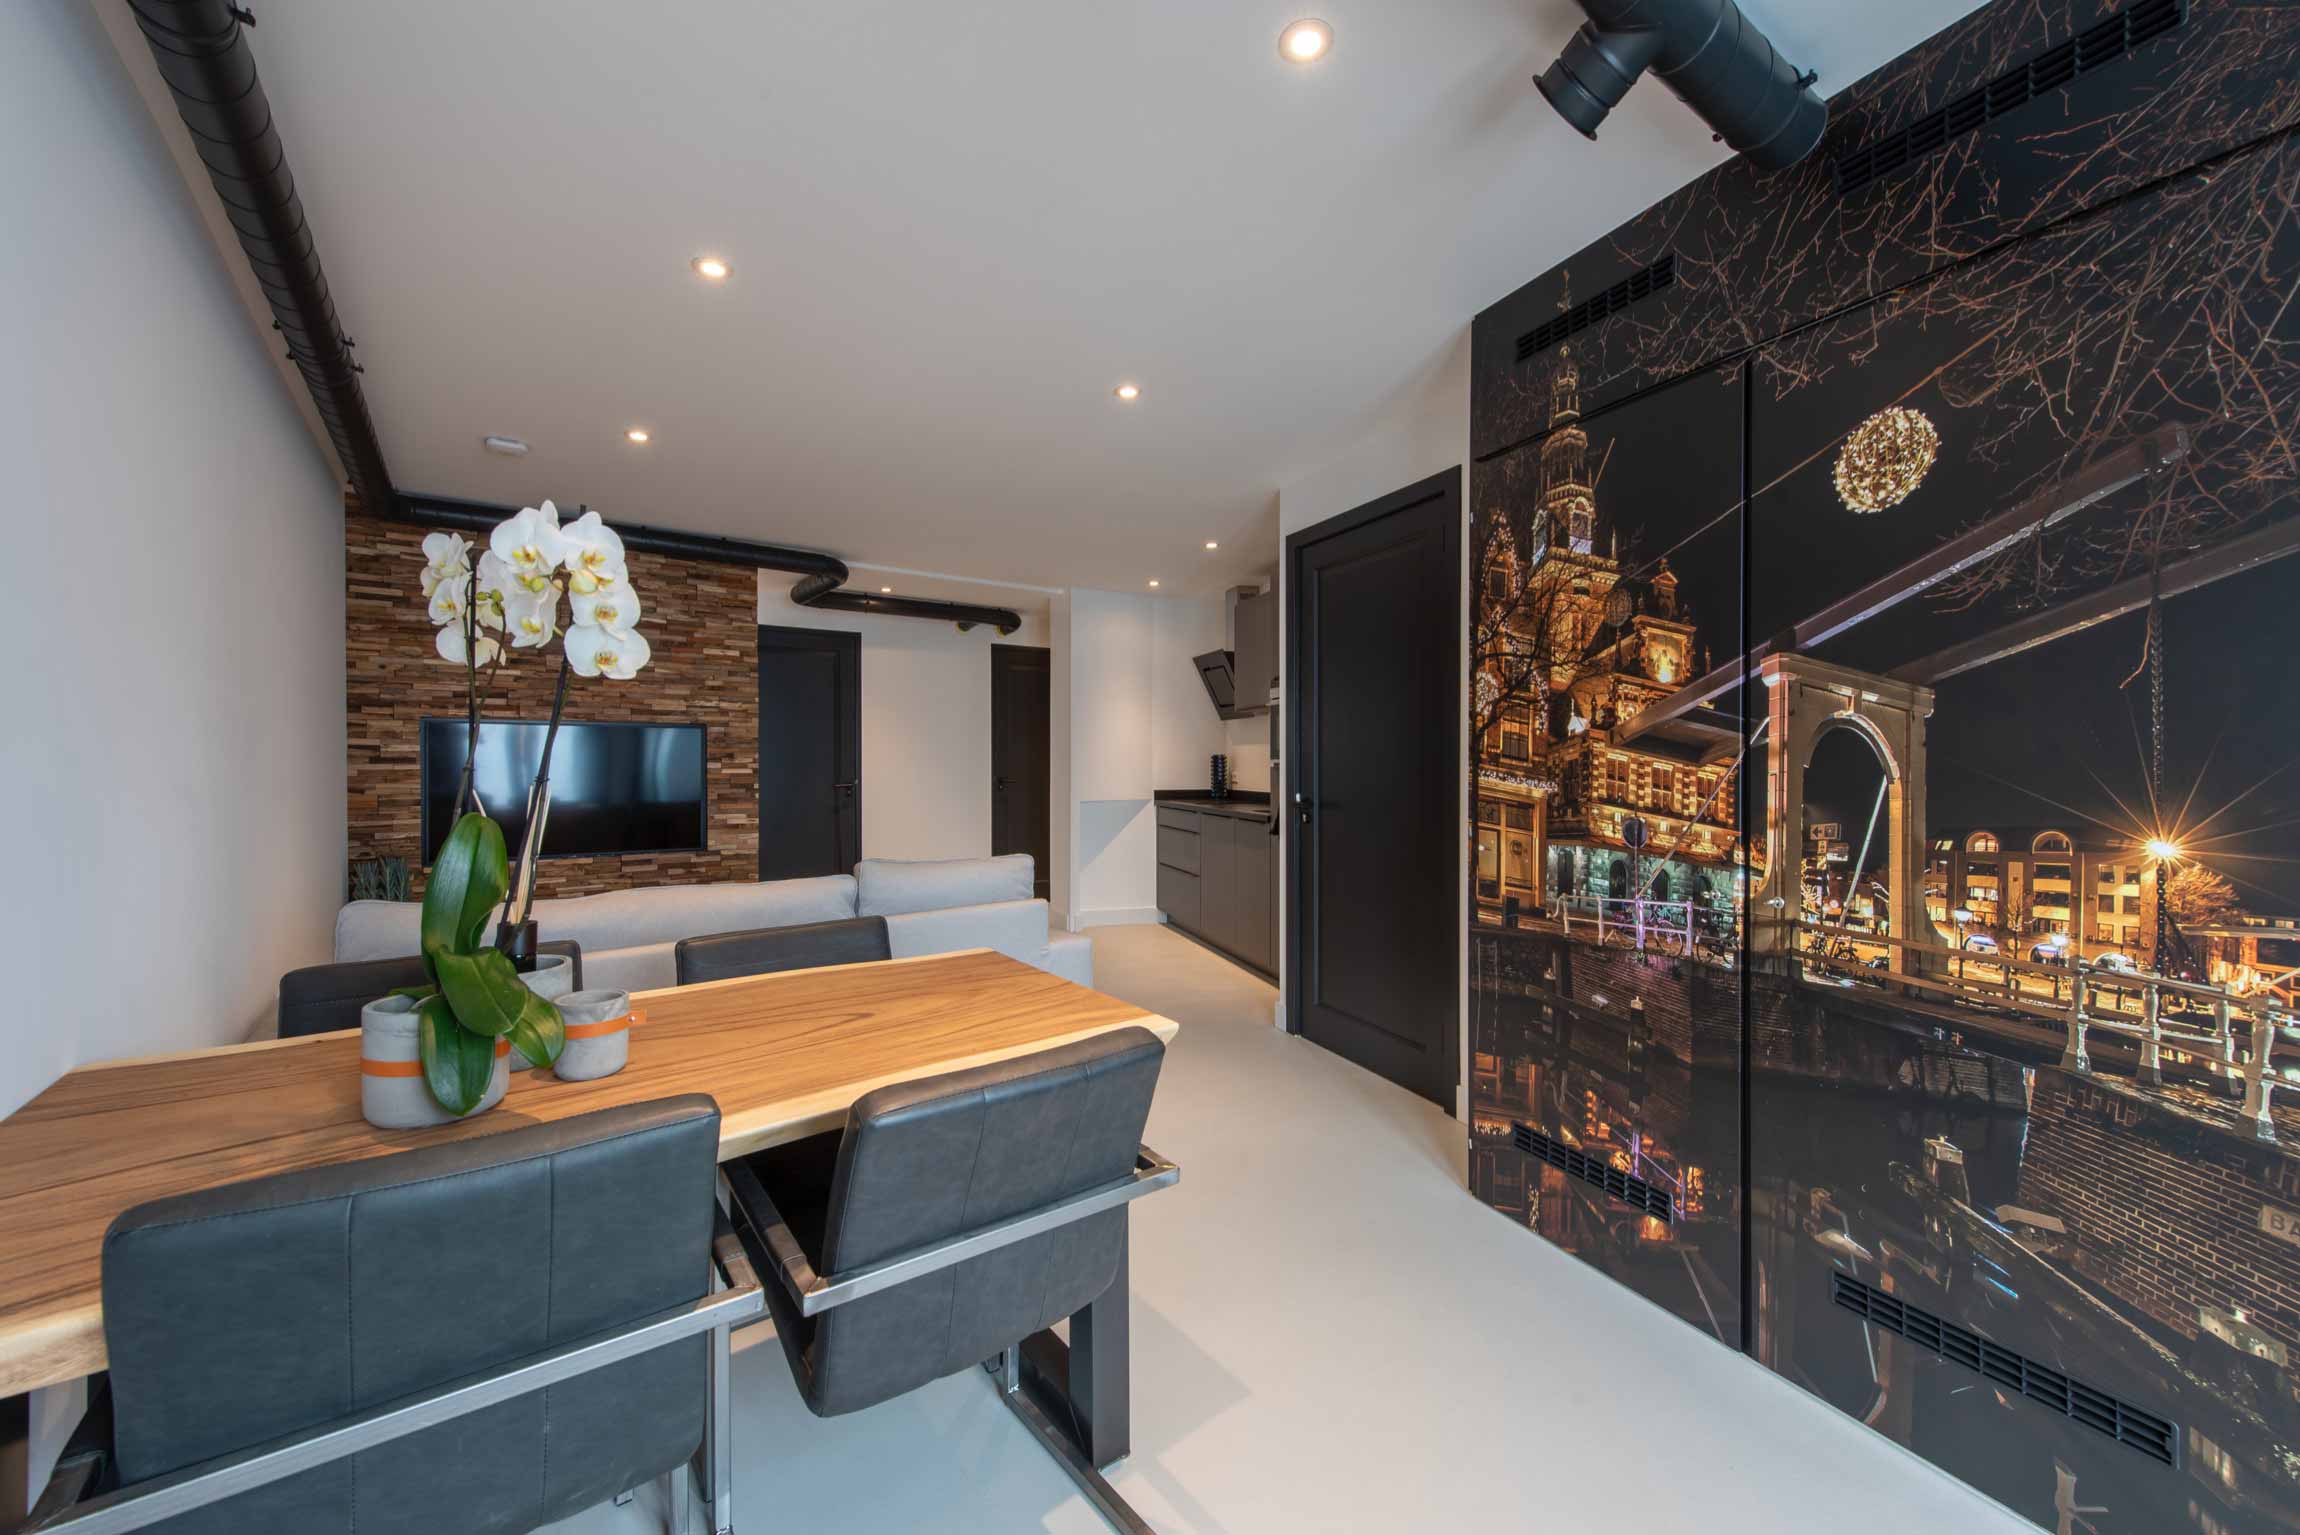 Recent gerenoveerd appartement voor 4 personen in het centrum van Alkmaar.